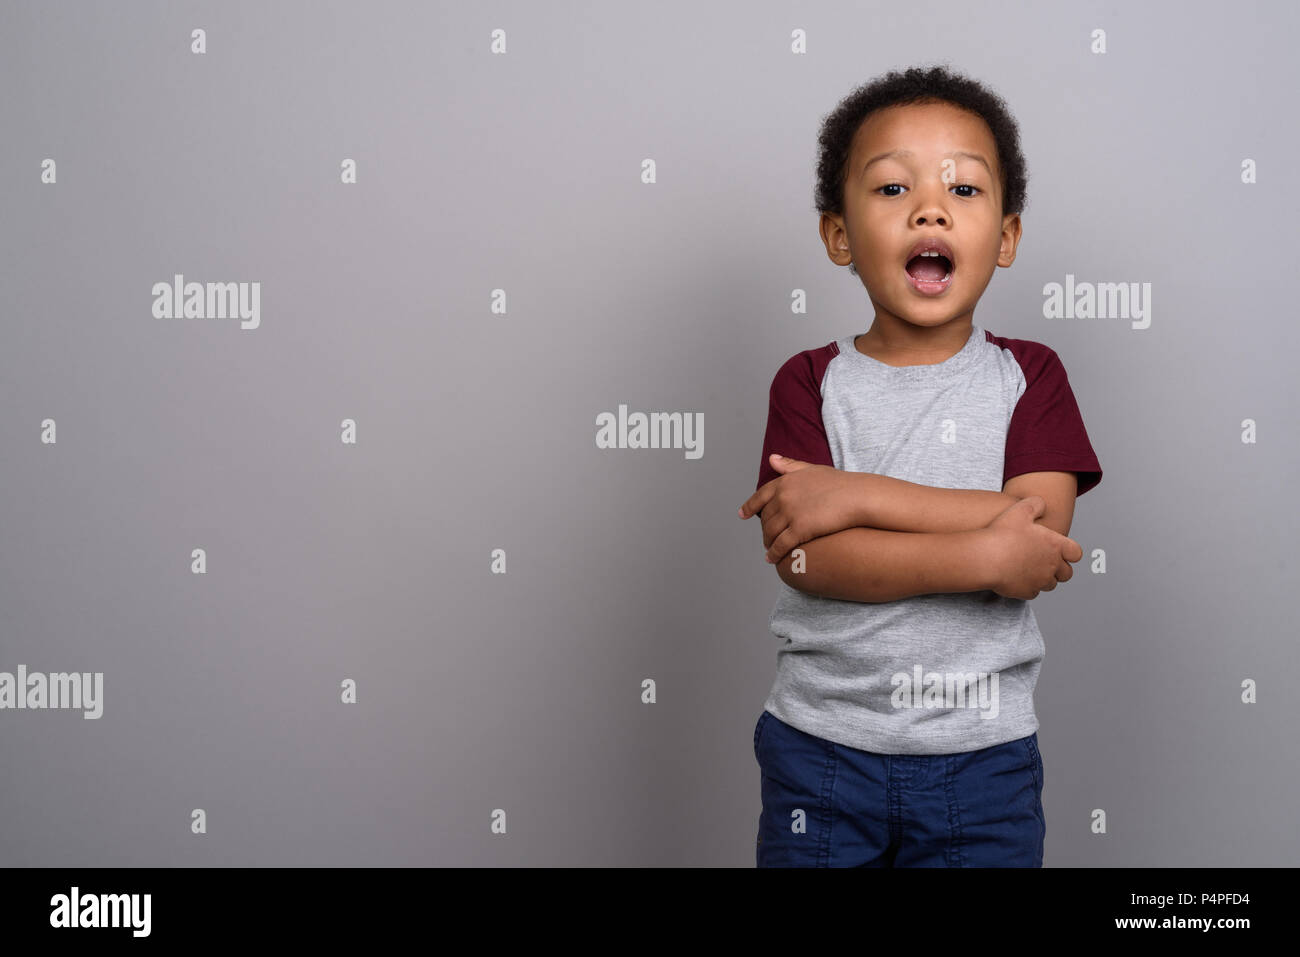 Lindo joven niño africano contra el fondo gris Foto de stock